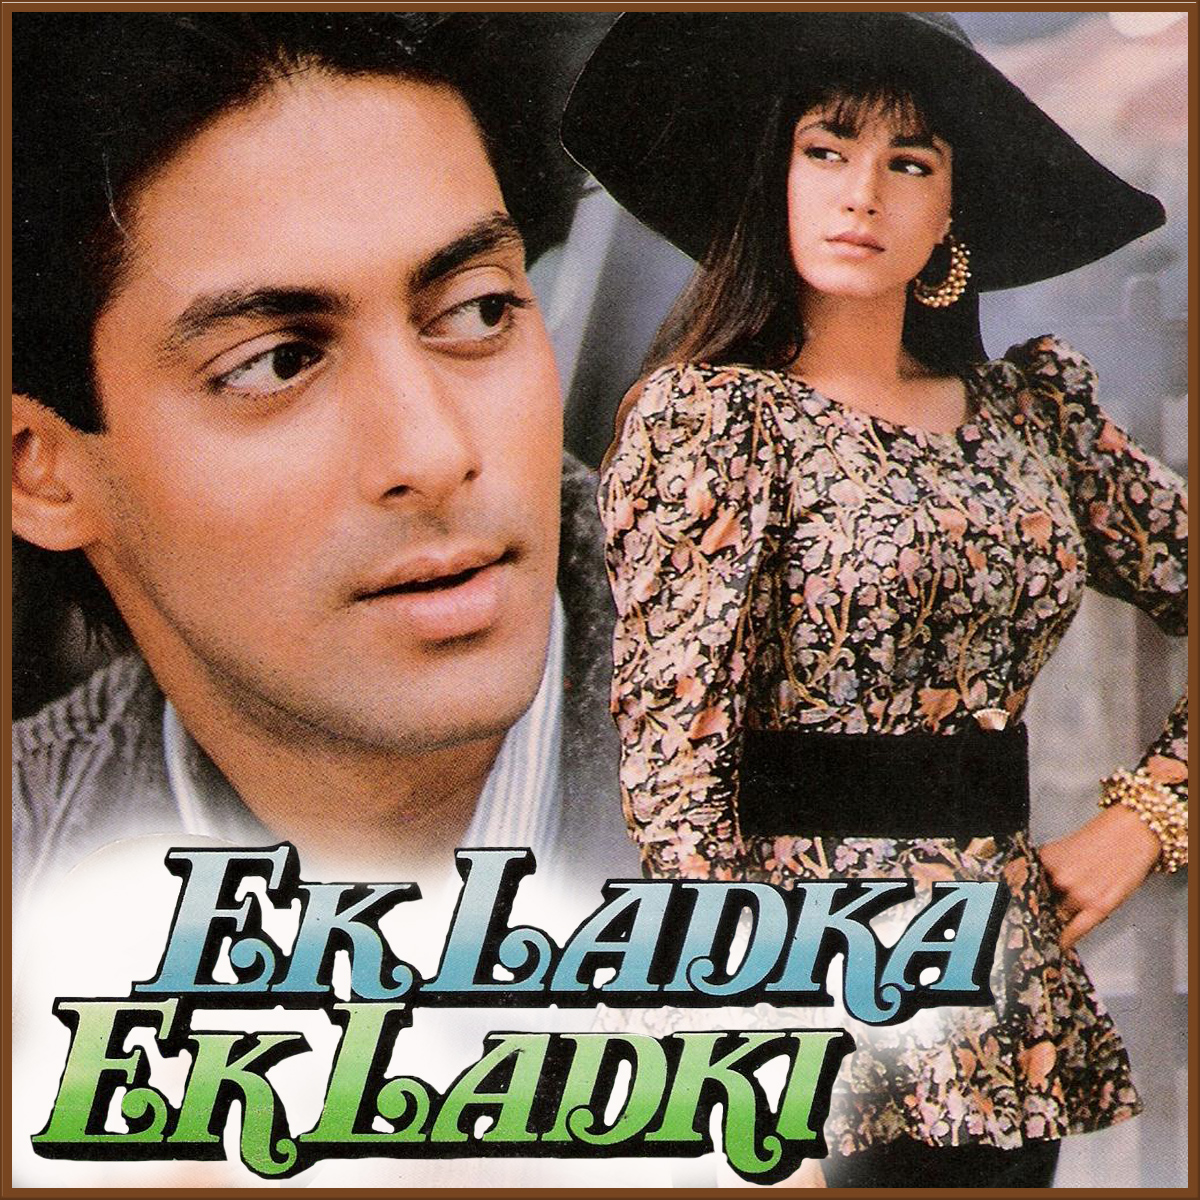 Ek Ladka Ek Ladki (1992)